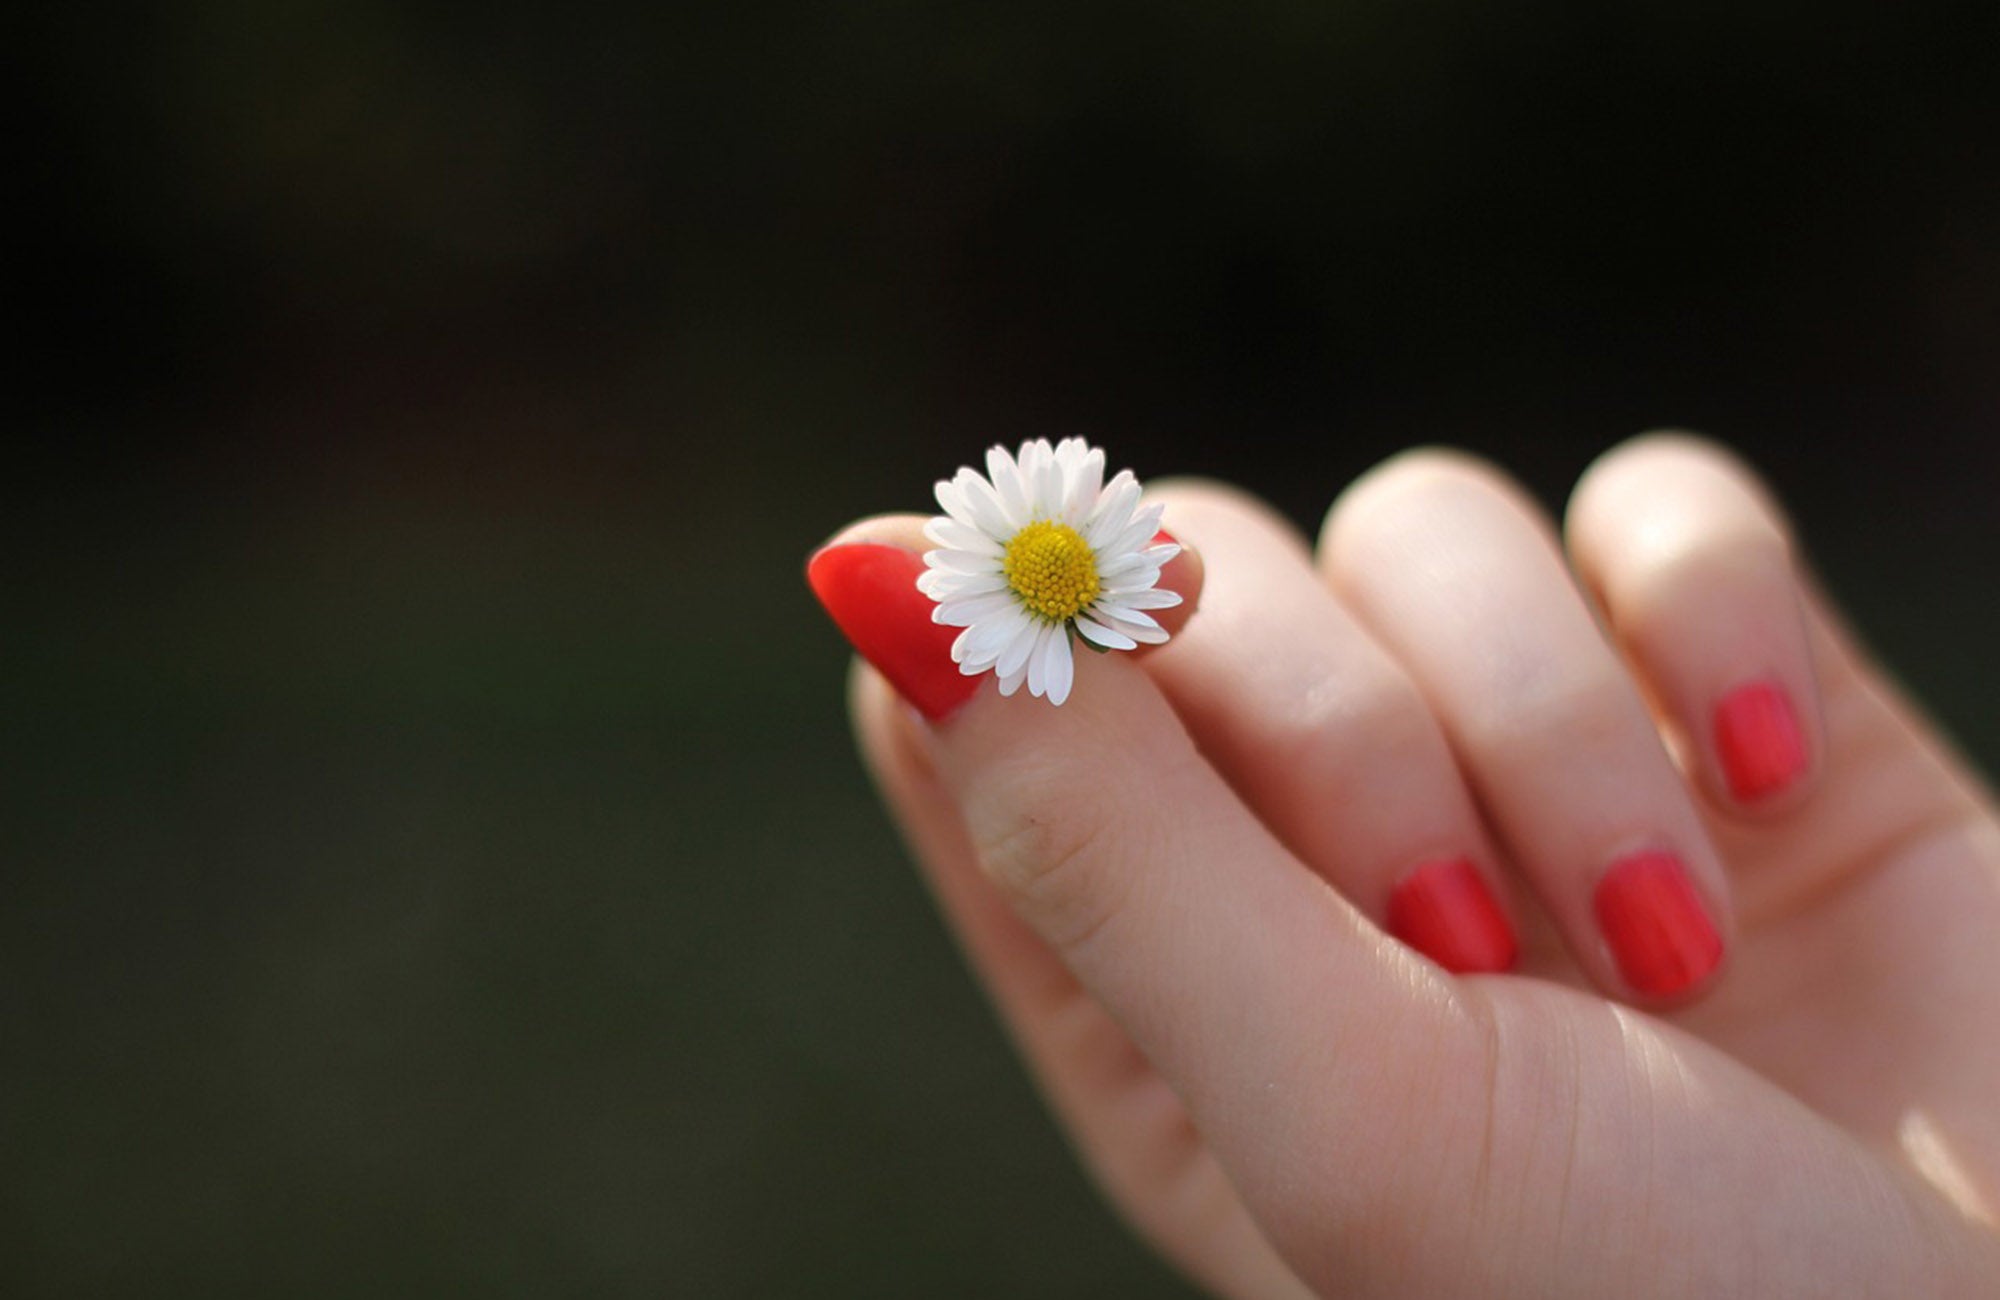 Female hand holding single small white flower